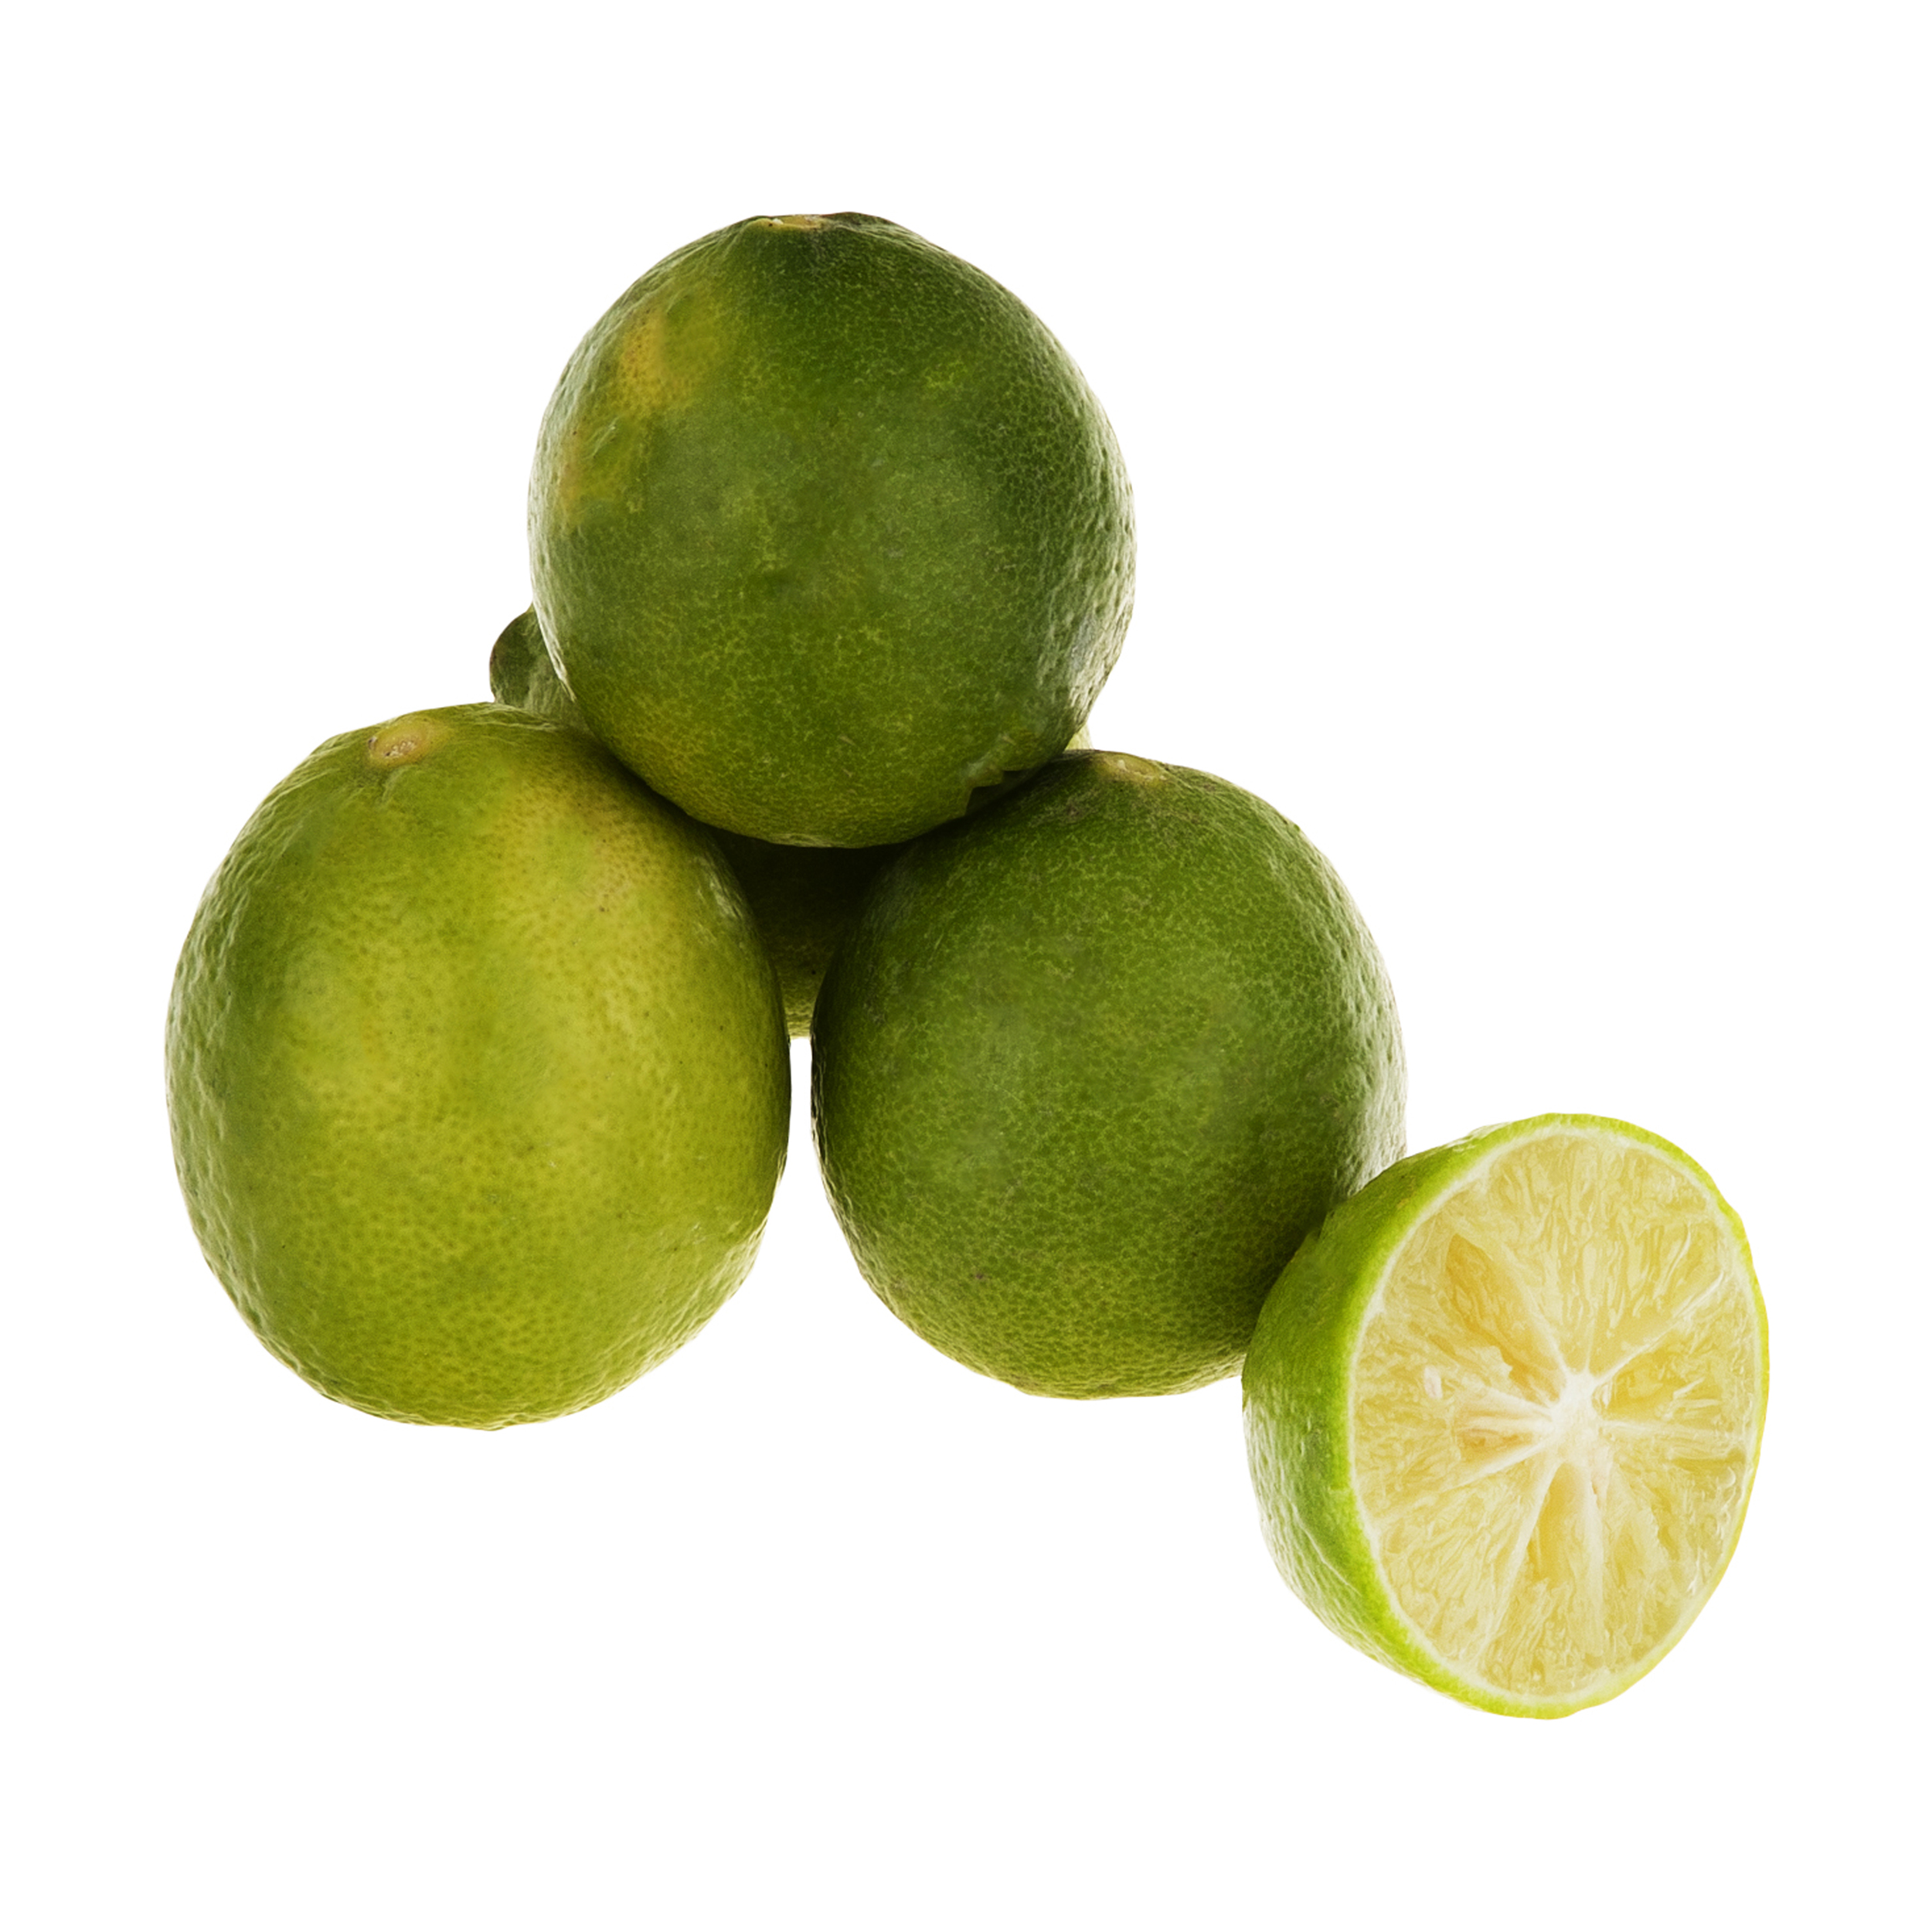 لیمو ترش سنگی میوه پلاس - 500 گرم